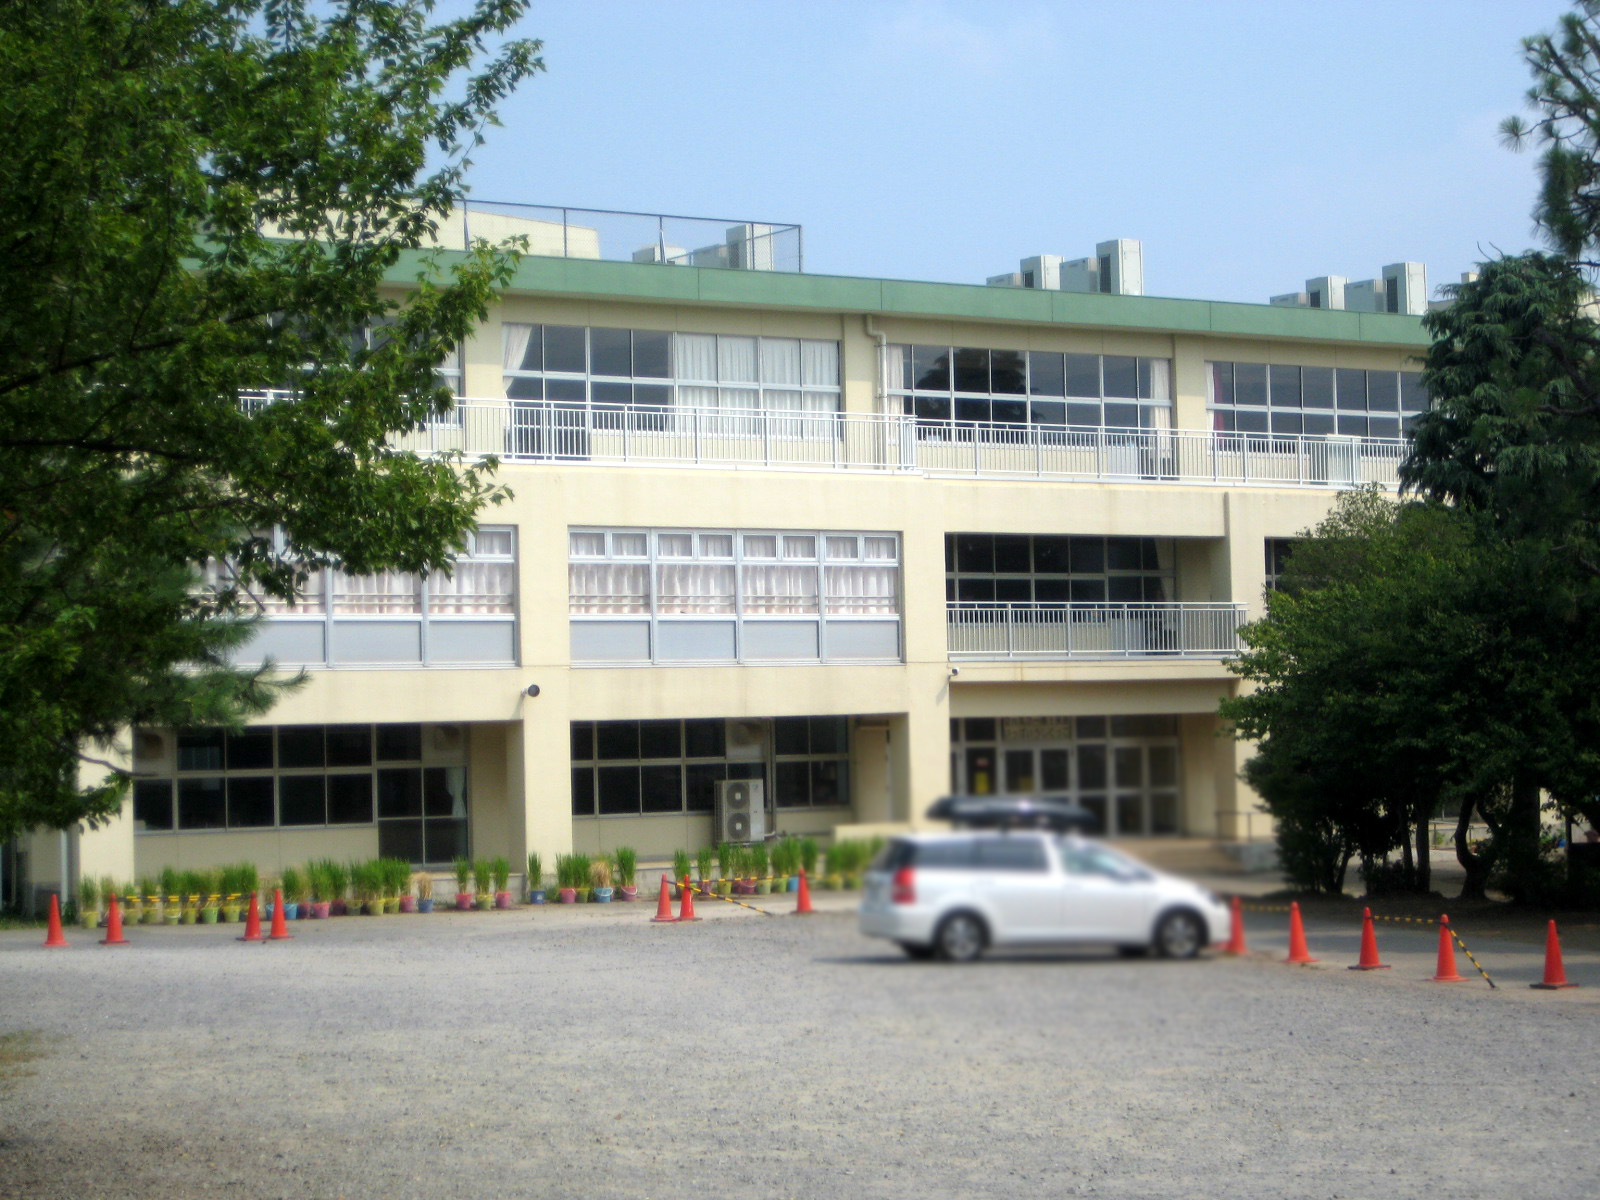 Primary school. Ushiku until the elementary school (Ushiku) (elementary school) 1200m